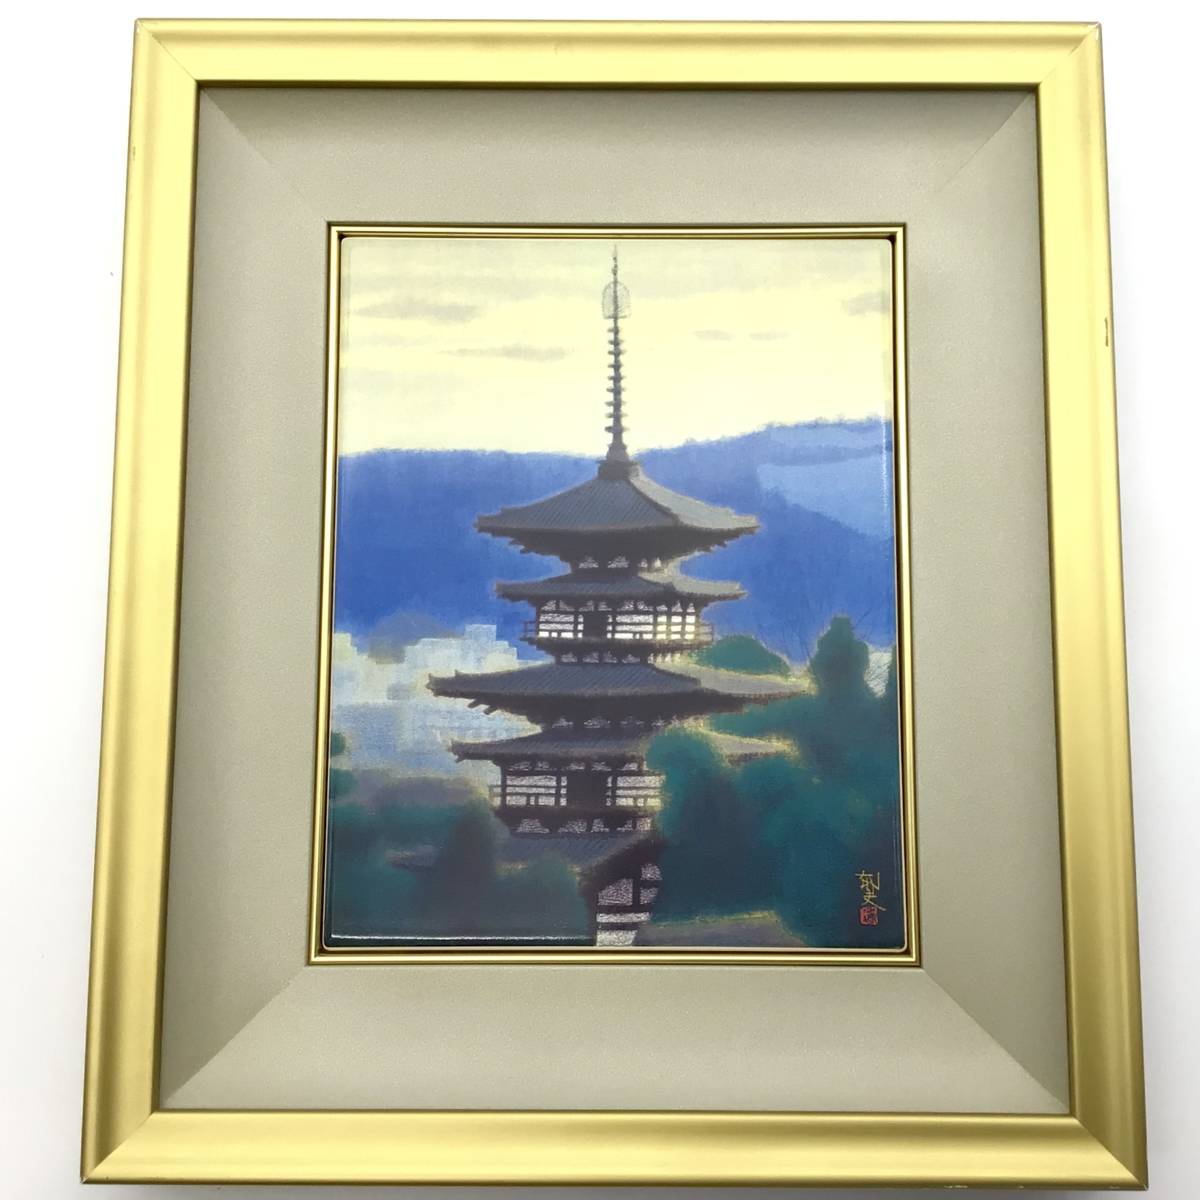 ◆◇Ikuo Hirayama pintura de tablero de cerámica Yakushiji East Tower enmarcada, caja de cosméticos, Con etiqueta de certificación◇◆, obra de arte, cuadro, otros